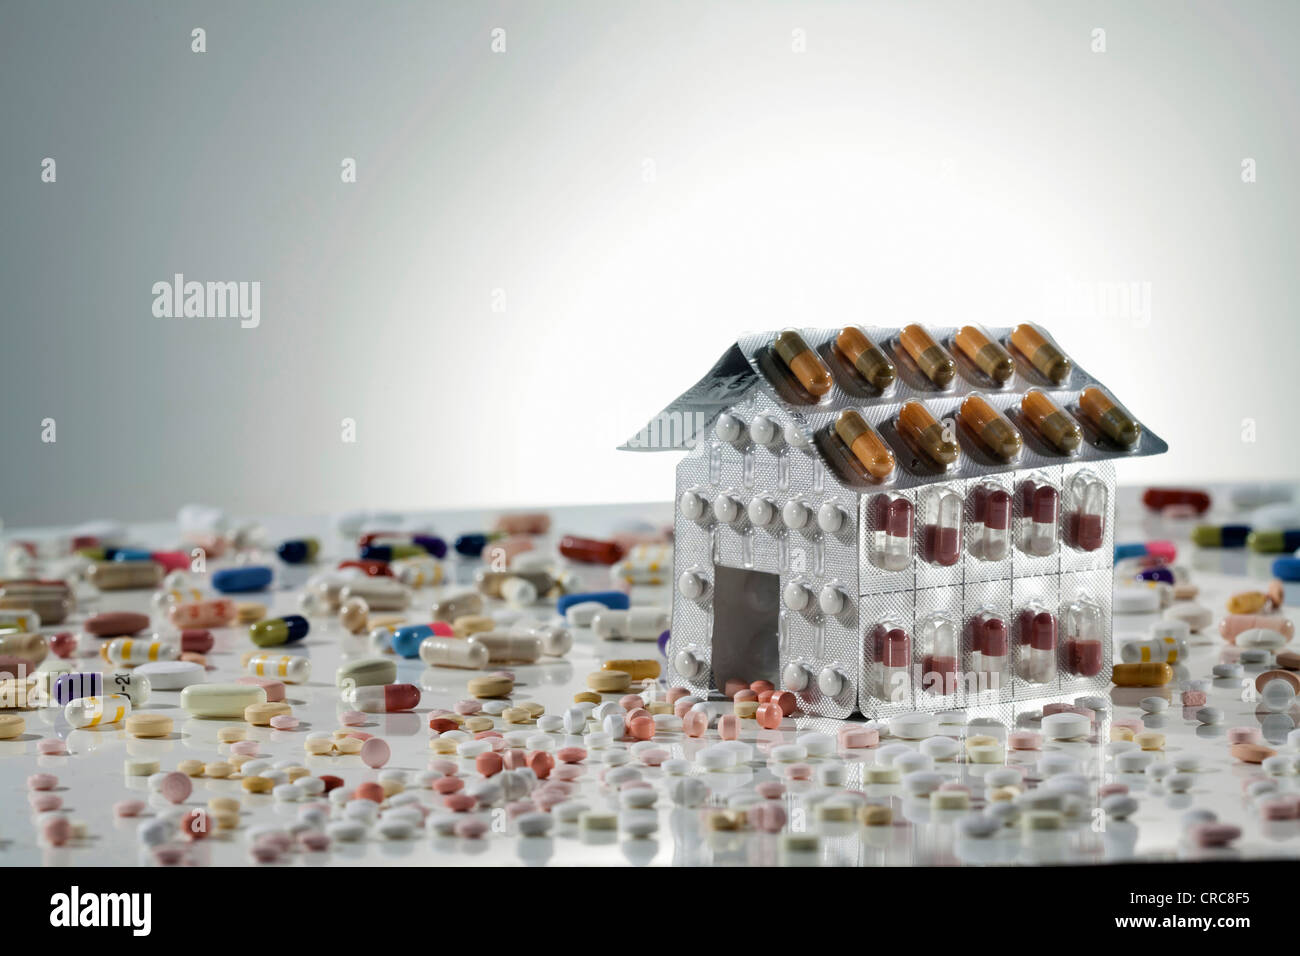 Blister packs of pills in shape of house Stock Photo